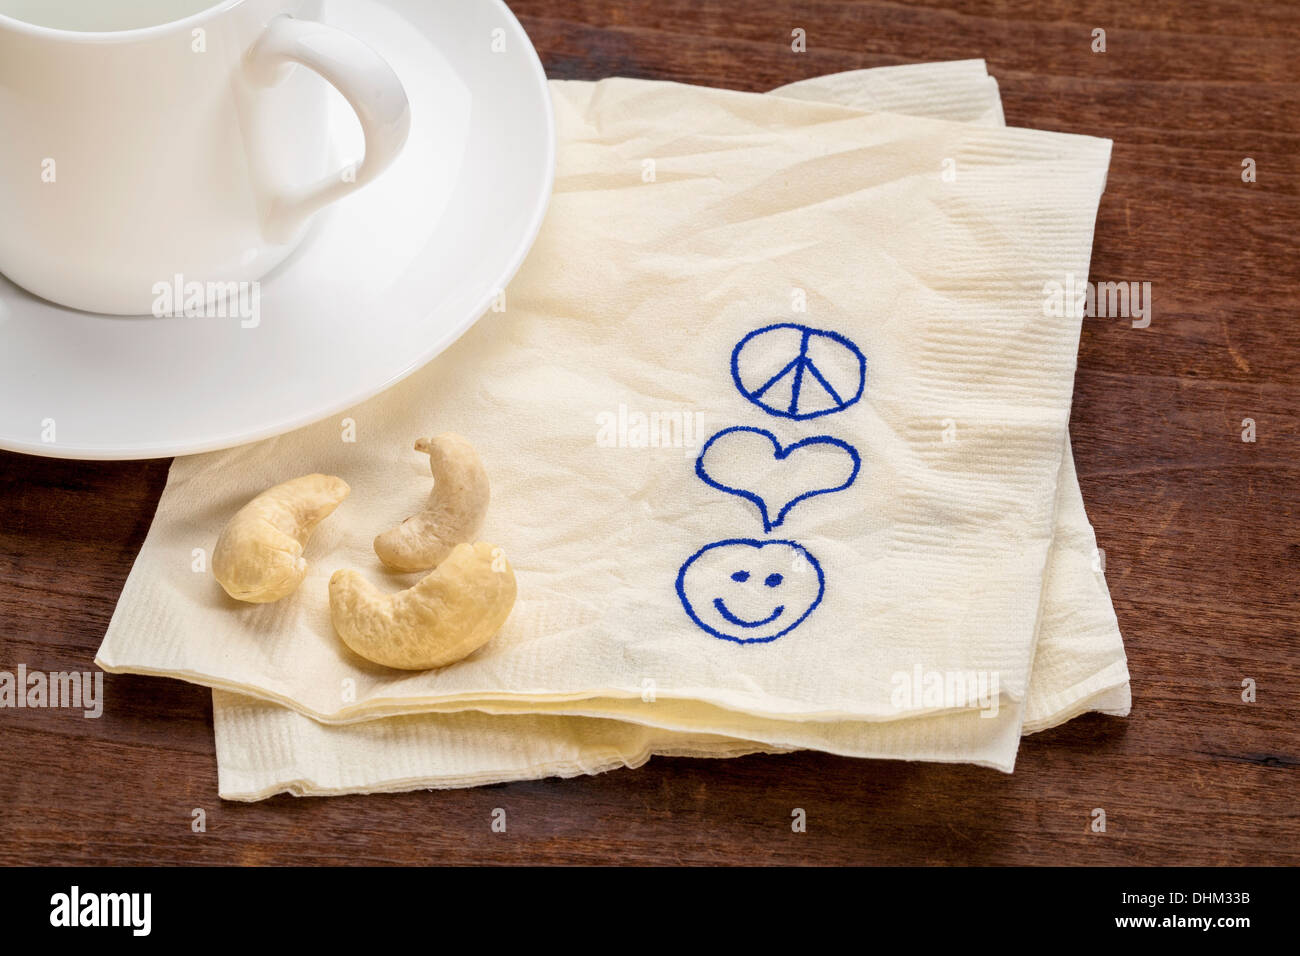 La paix, l'amour et le bonheur des symboles dessinés sur une serviette avec une tasse de café Banque D'Images